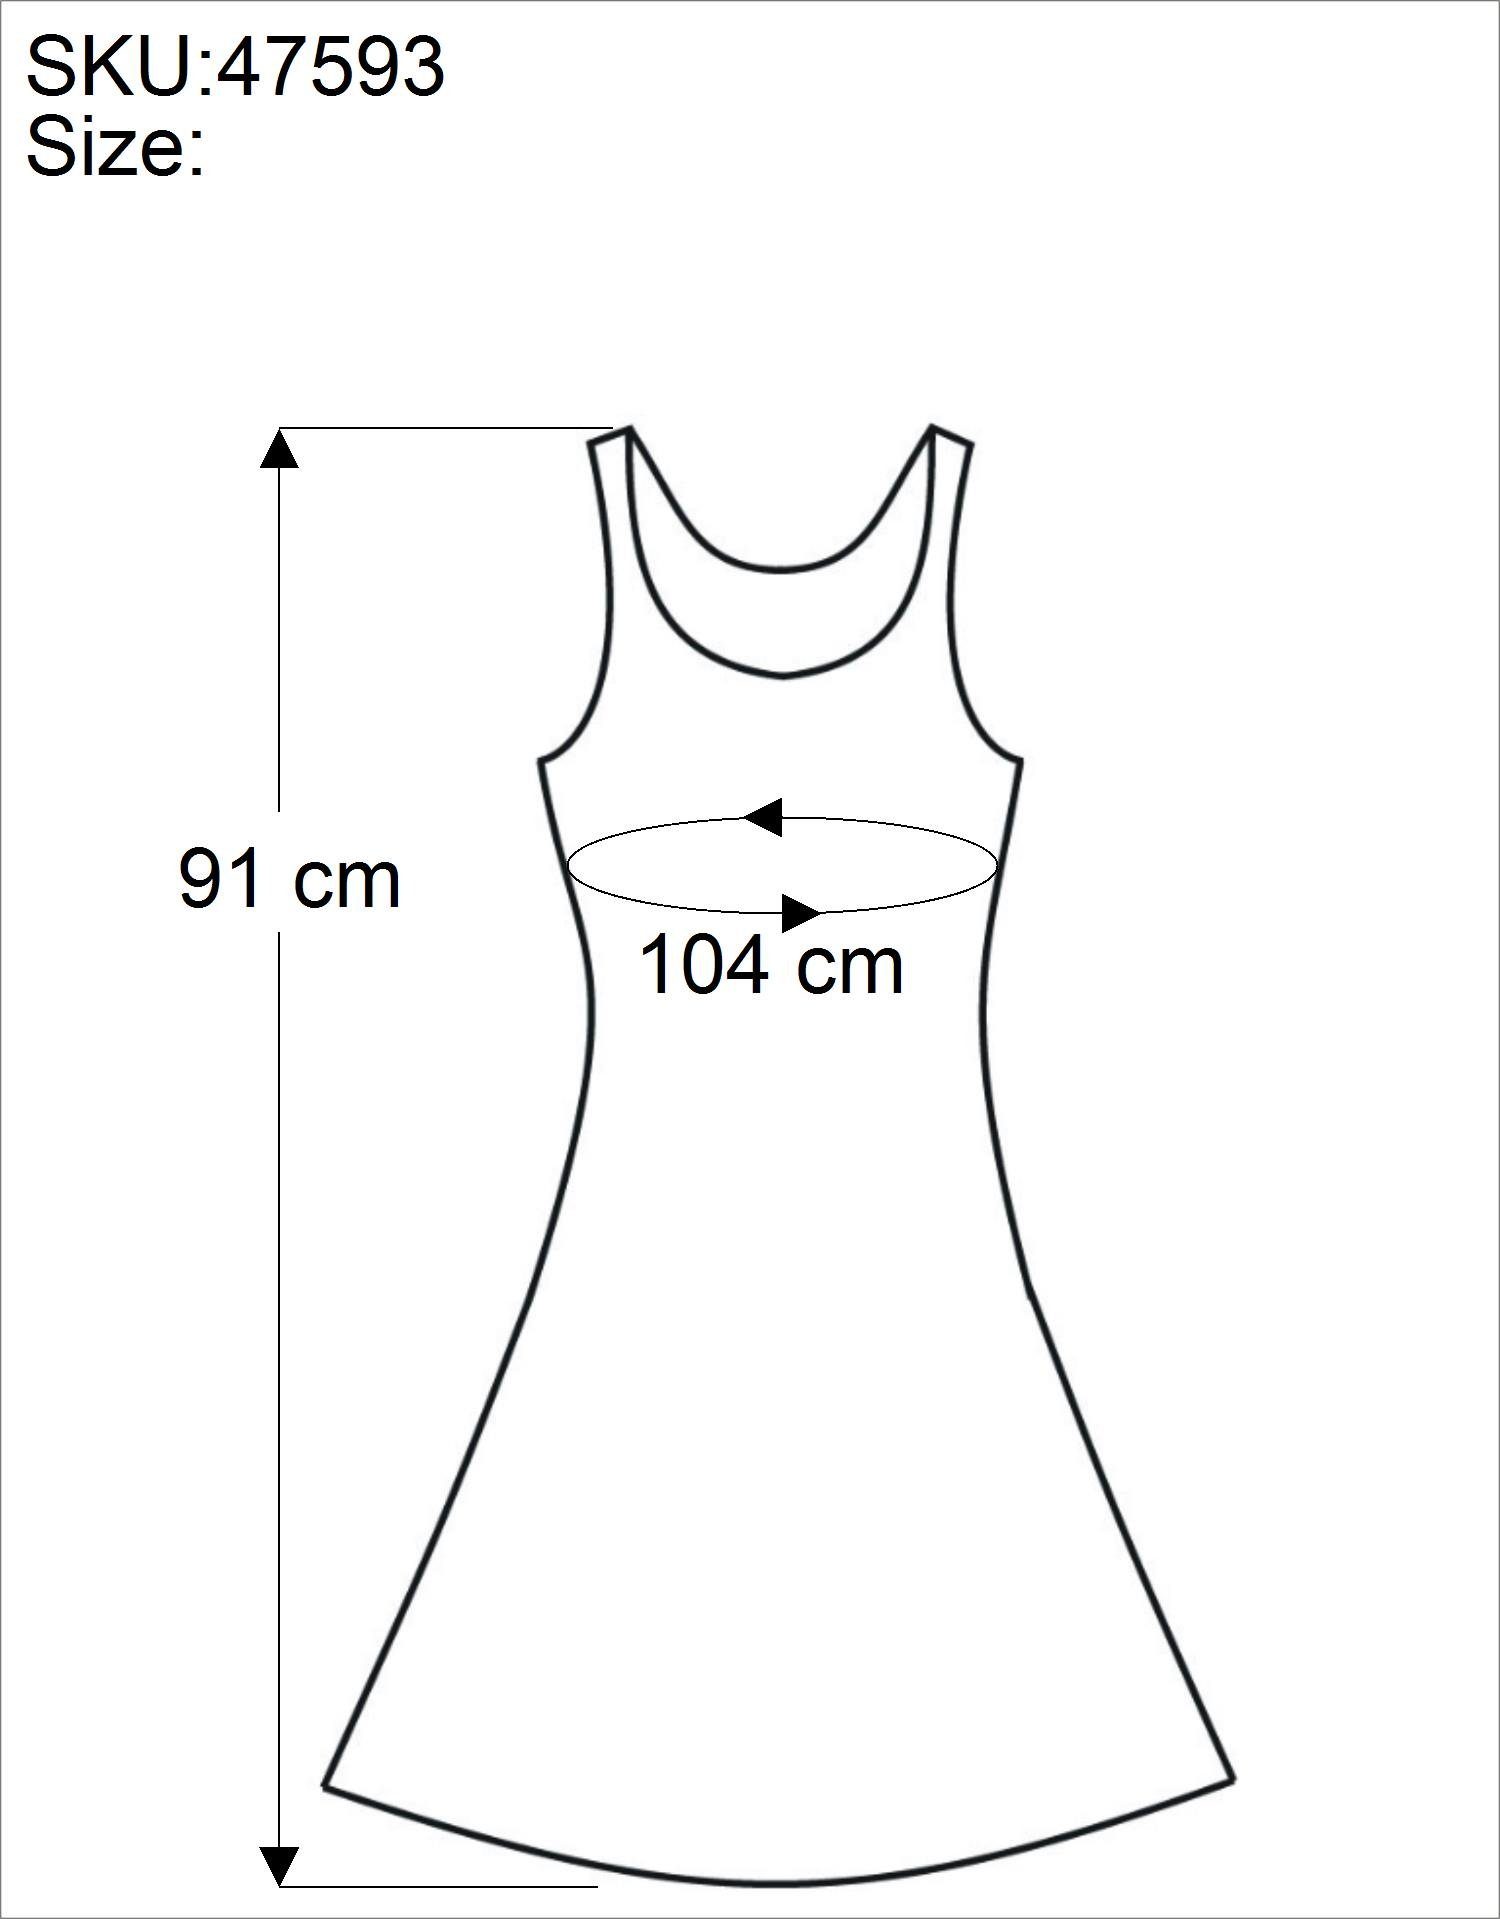 schwarz/Design alternative indisches Guru-Shop Minikleid Midikleid 23 -.. Boho Besticktes Bekleidung Kleid,